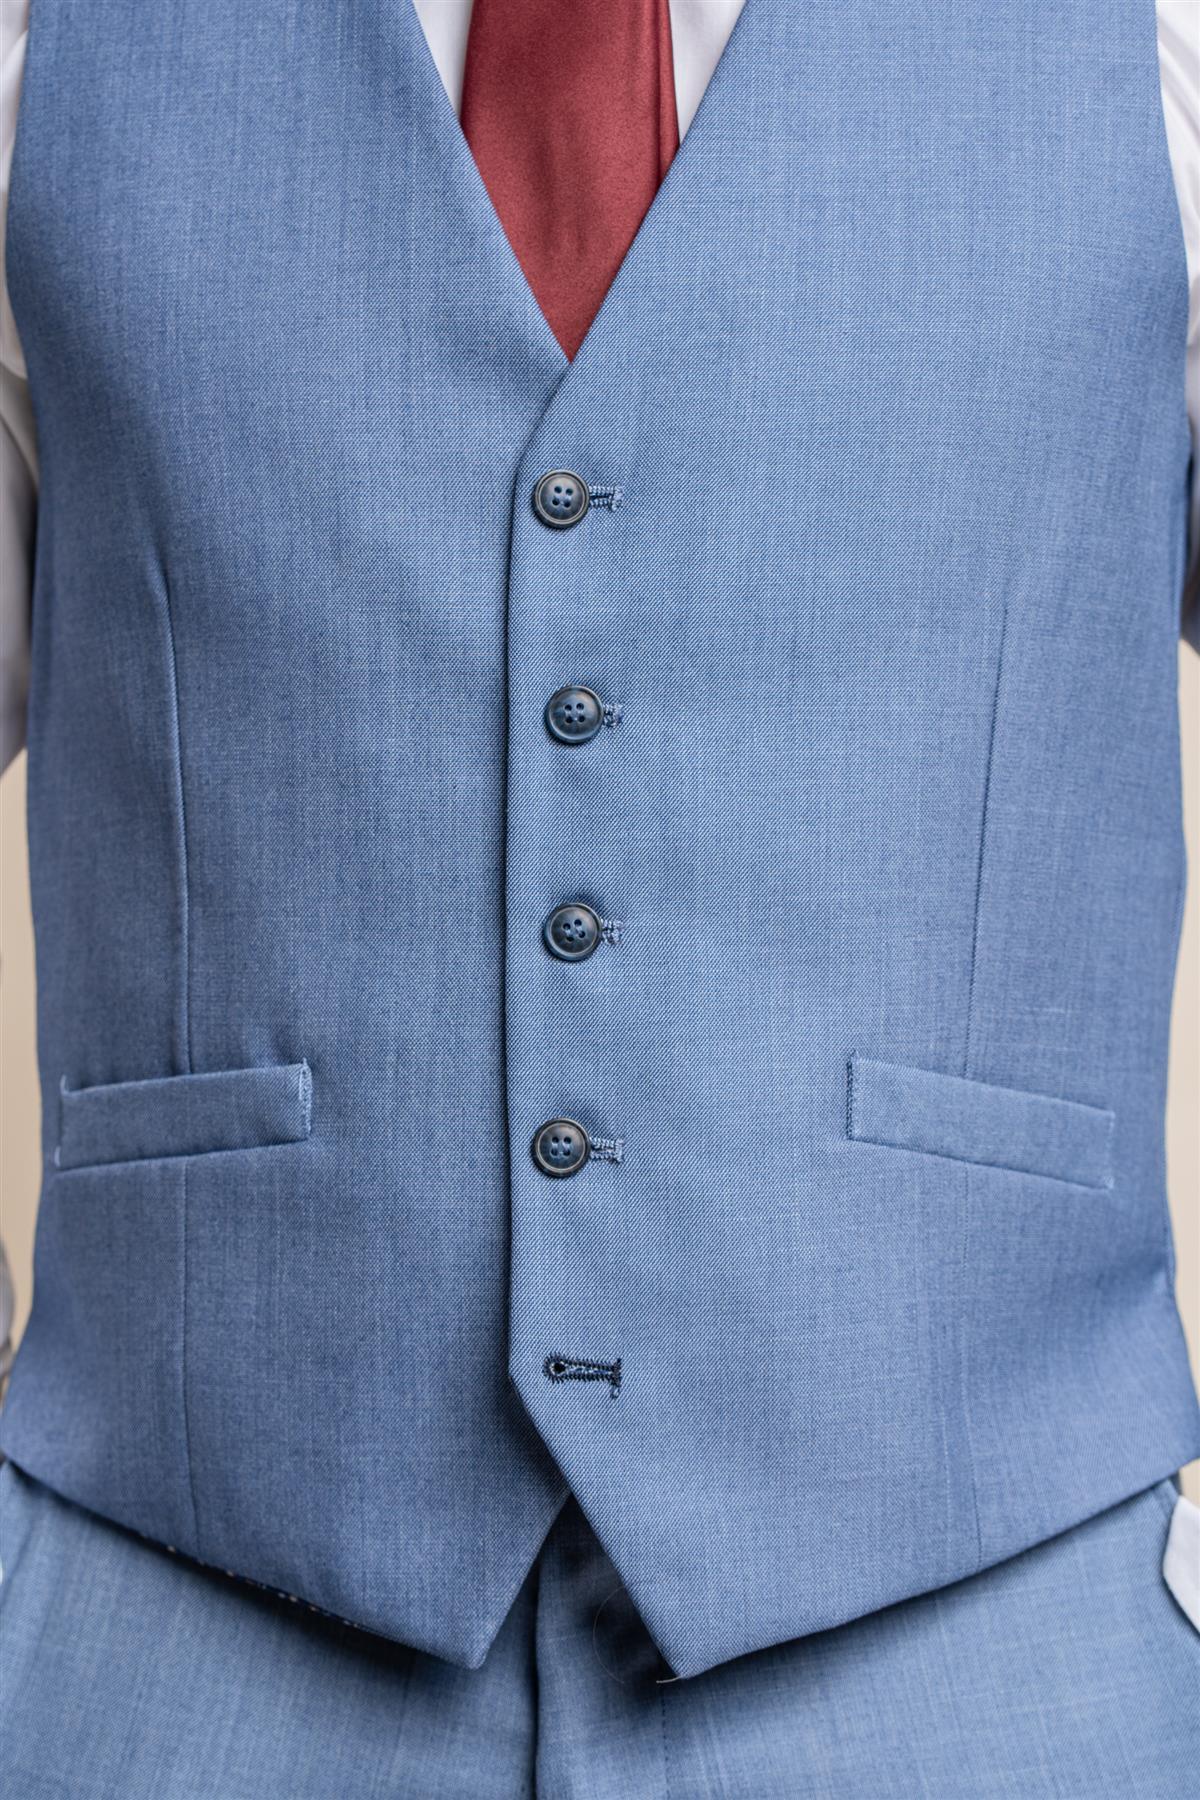 Blue jay waistcoat front detail